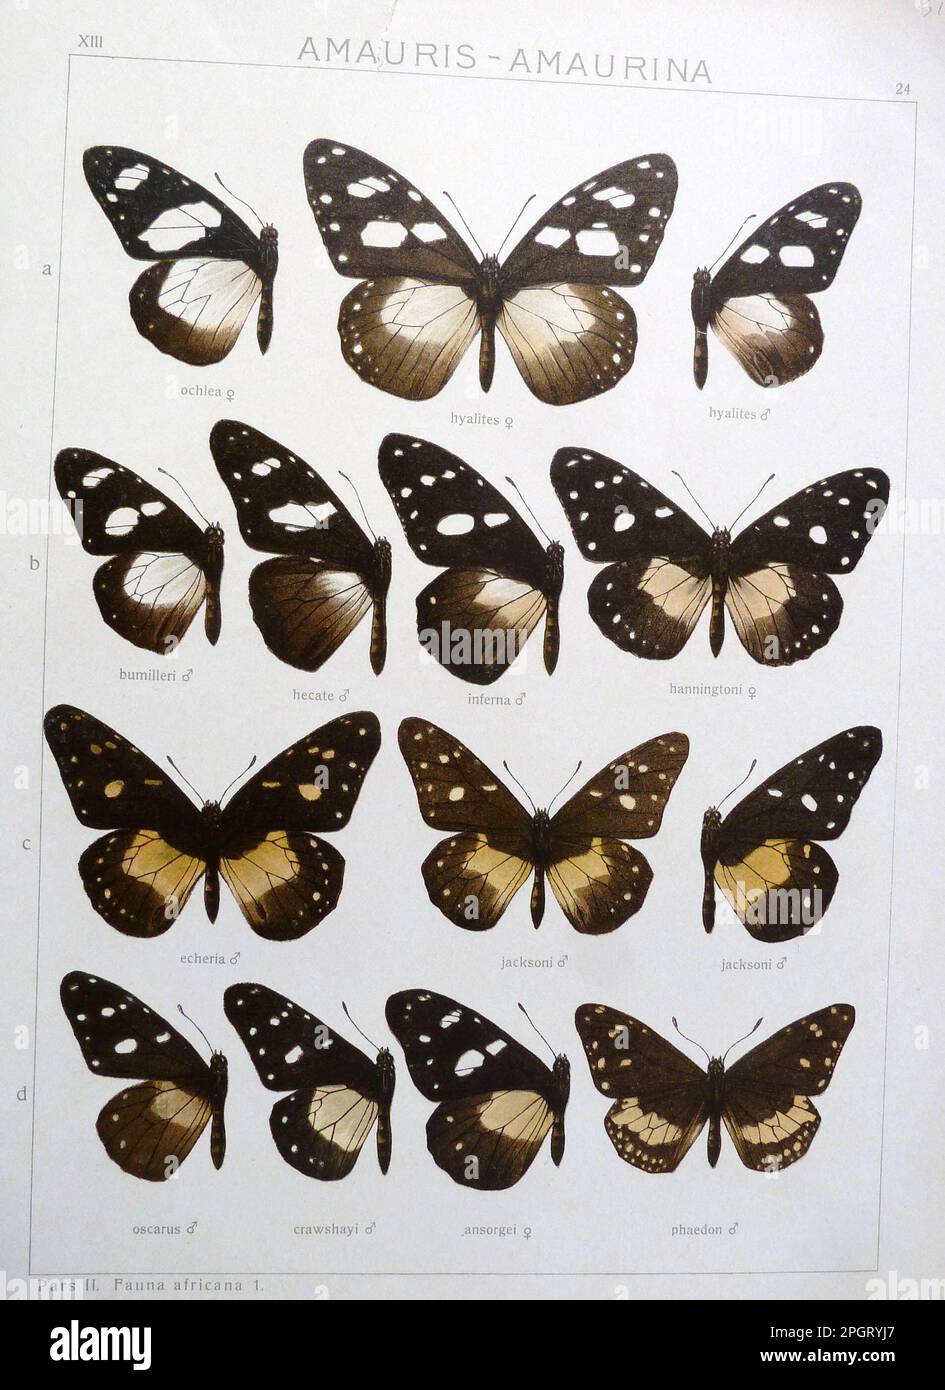 Adalbert Seitz Die Gross-Schmetterlinge der Erde 13: Die Afrikanischen Tagfalter. Plate XIII 24 Amauris ochlea (Boisduval, 1847) Amauris hyalites Butler, 1874 Stock Photo